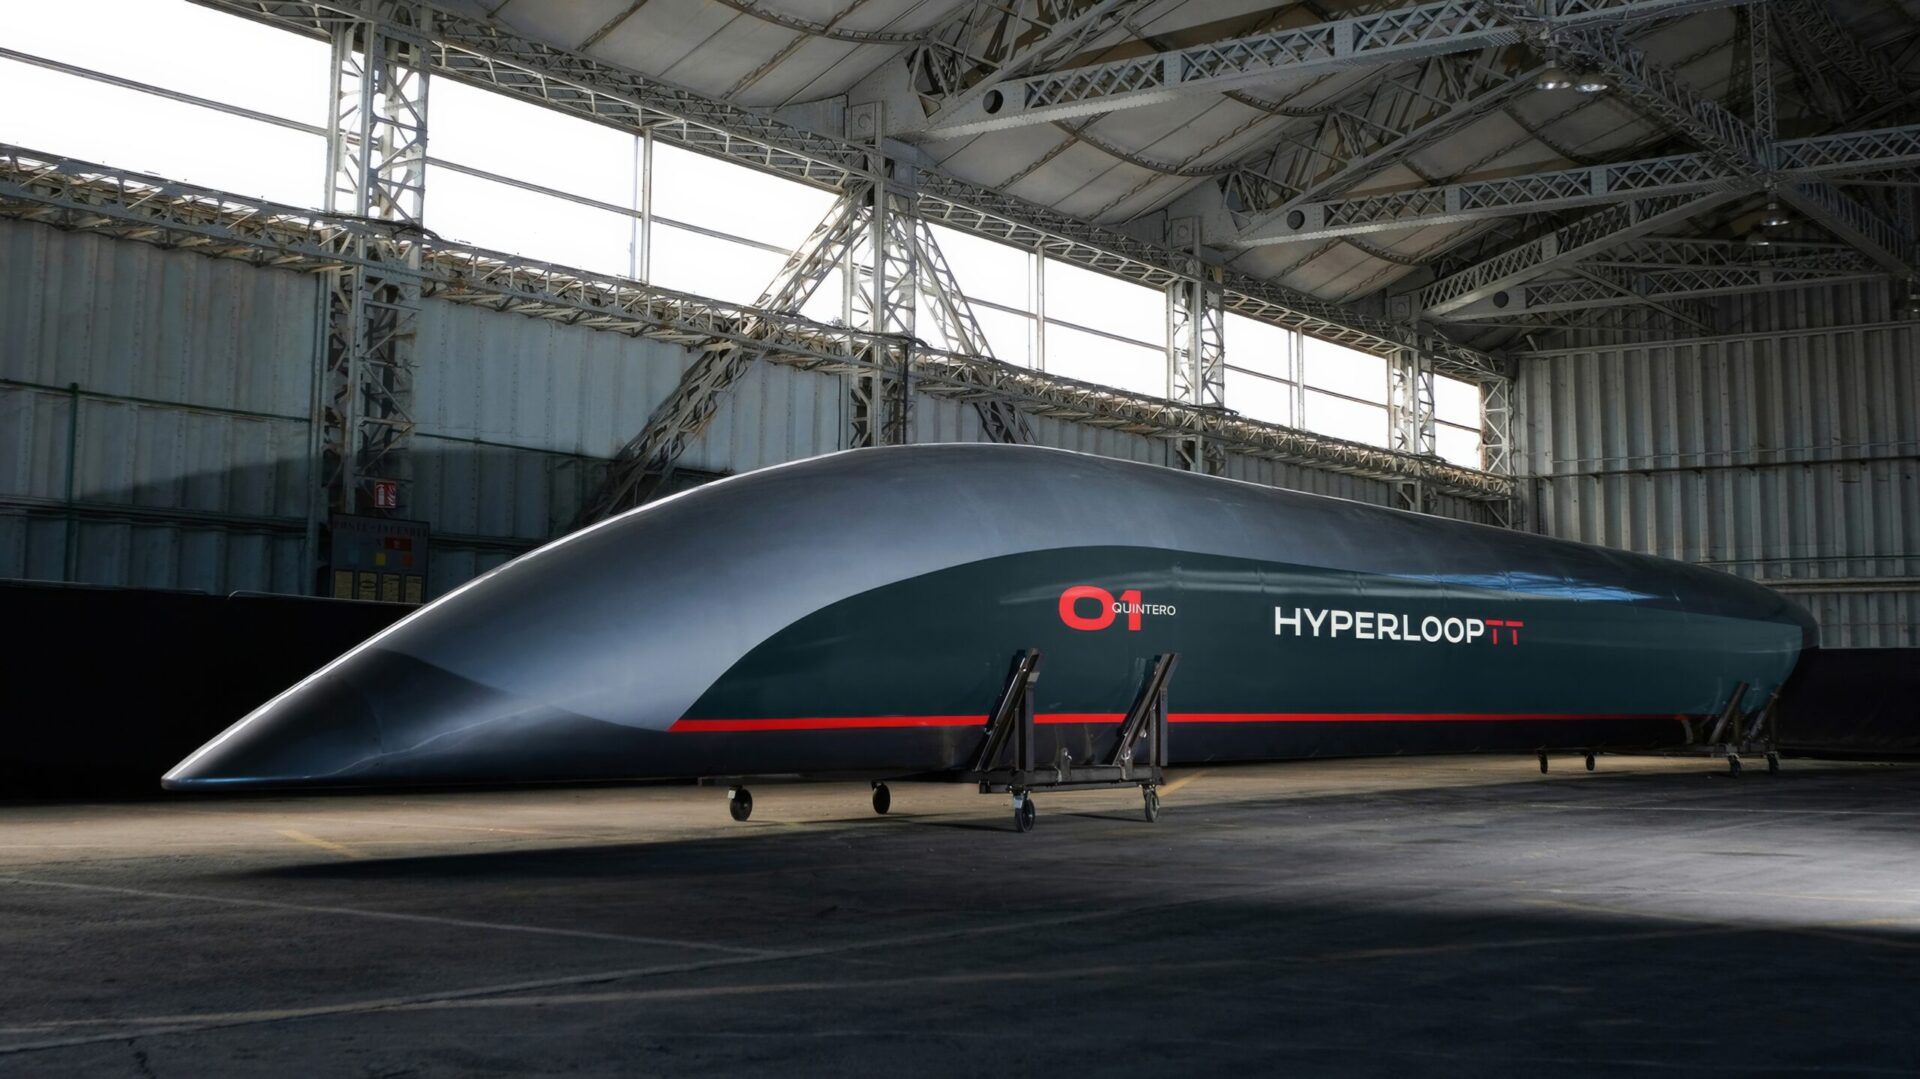 Italien kan få världens första kommersiella hyperloop